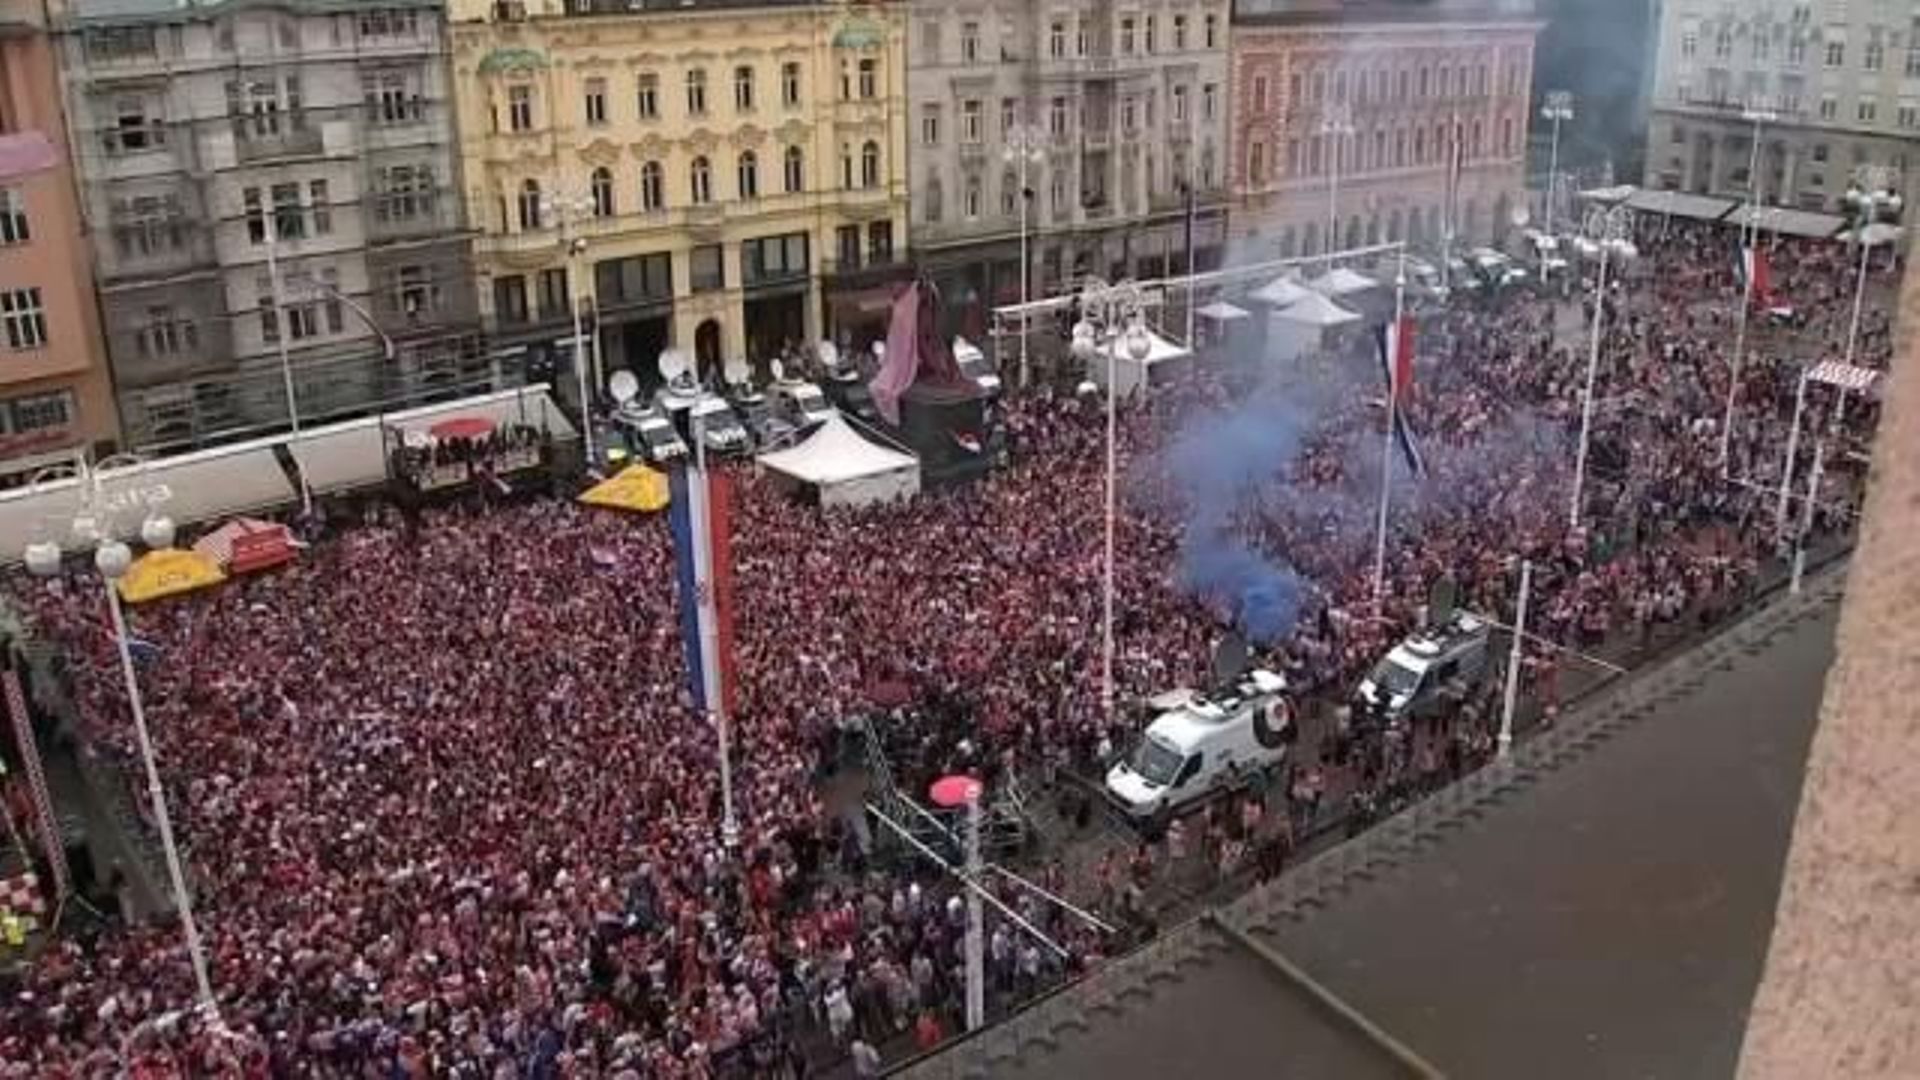 Non, cette vidéo vue 10 millions de fois depuis hier ne représente pas la fête en Croatie